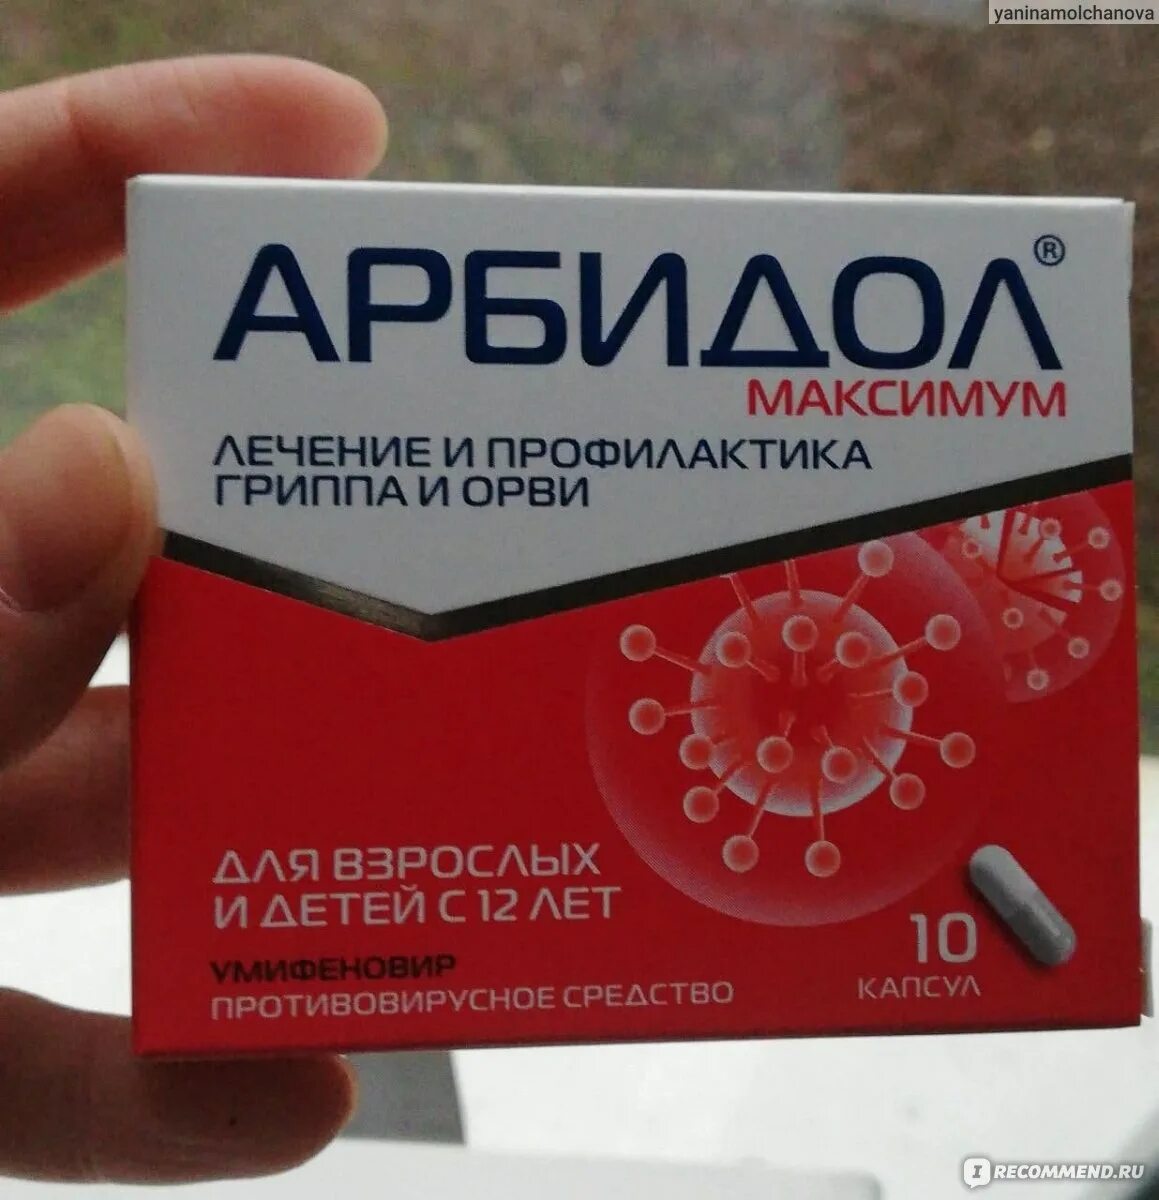 Арбидол взрослый при орви. Арбидол максимум. Противовирусное средство. Противовирусные препараты для взрослых.